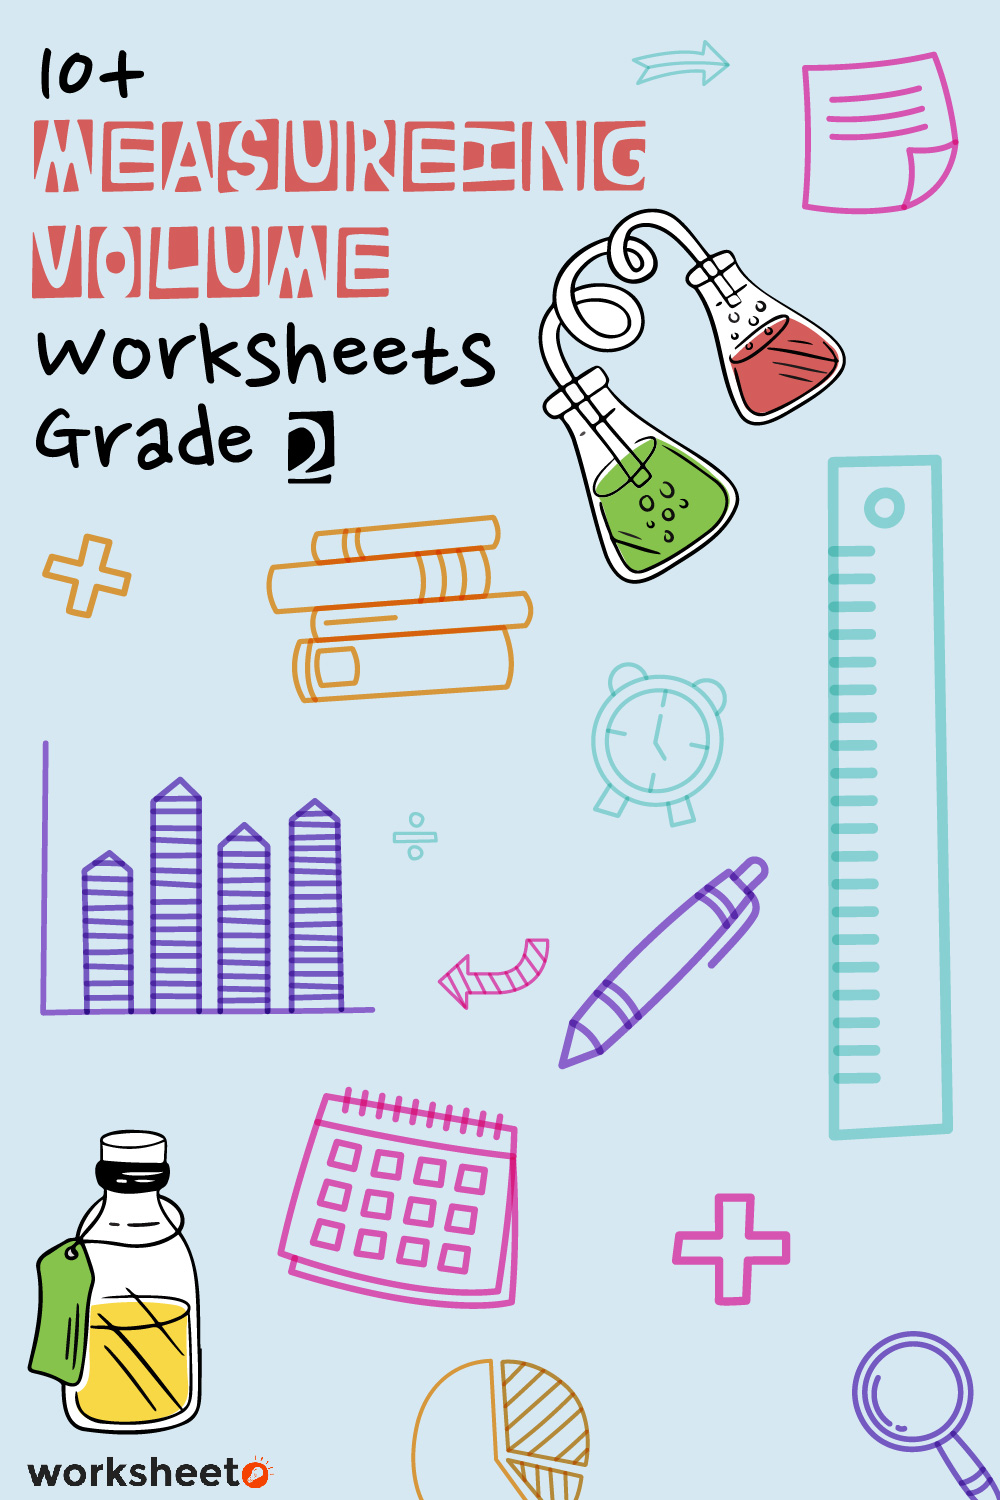 11 Images of Measureing Volume Worksheets Grade 2